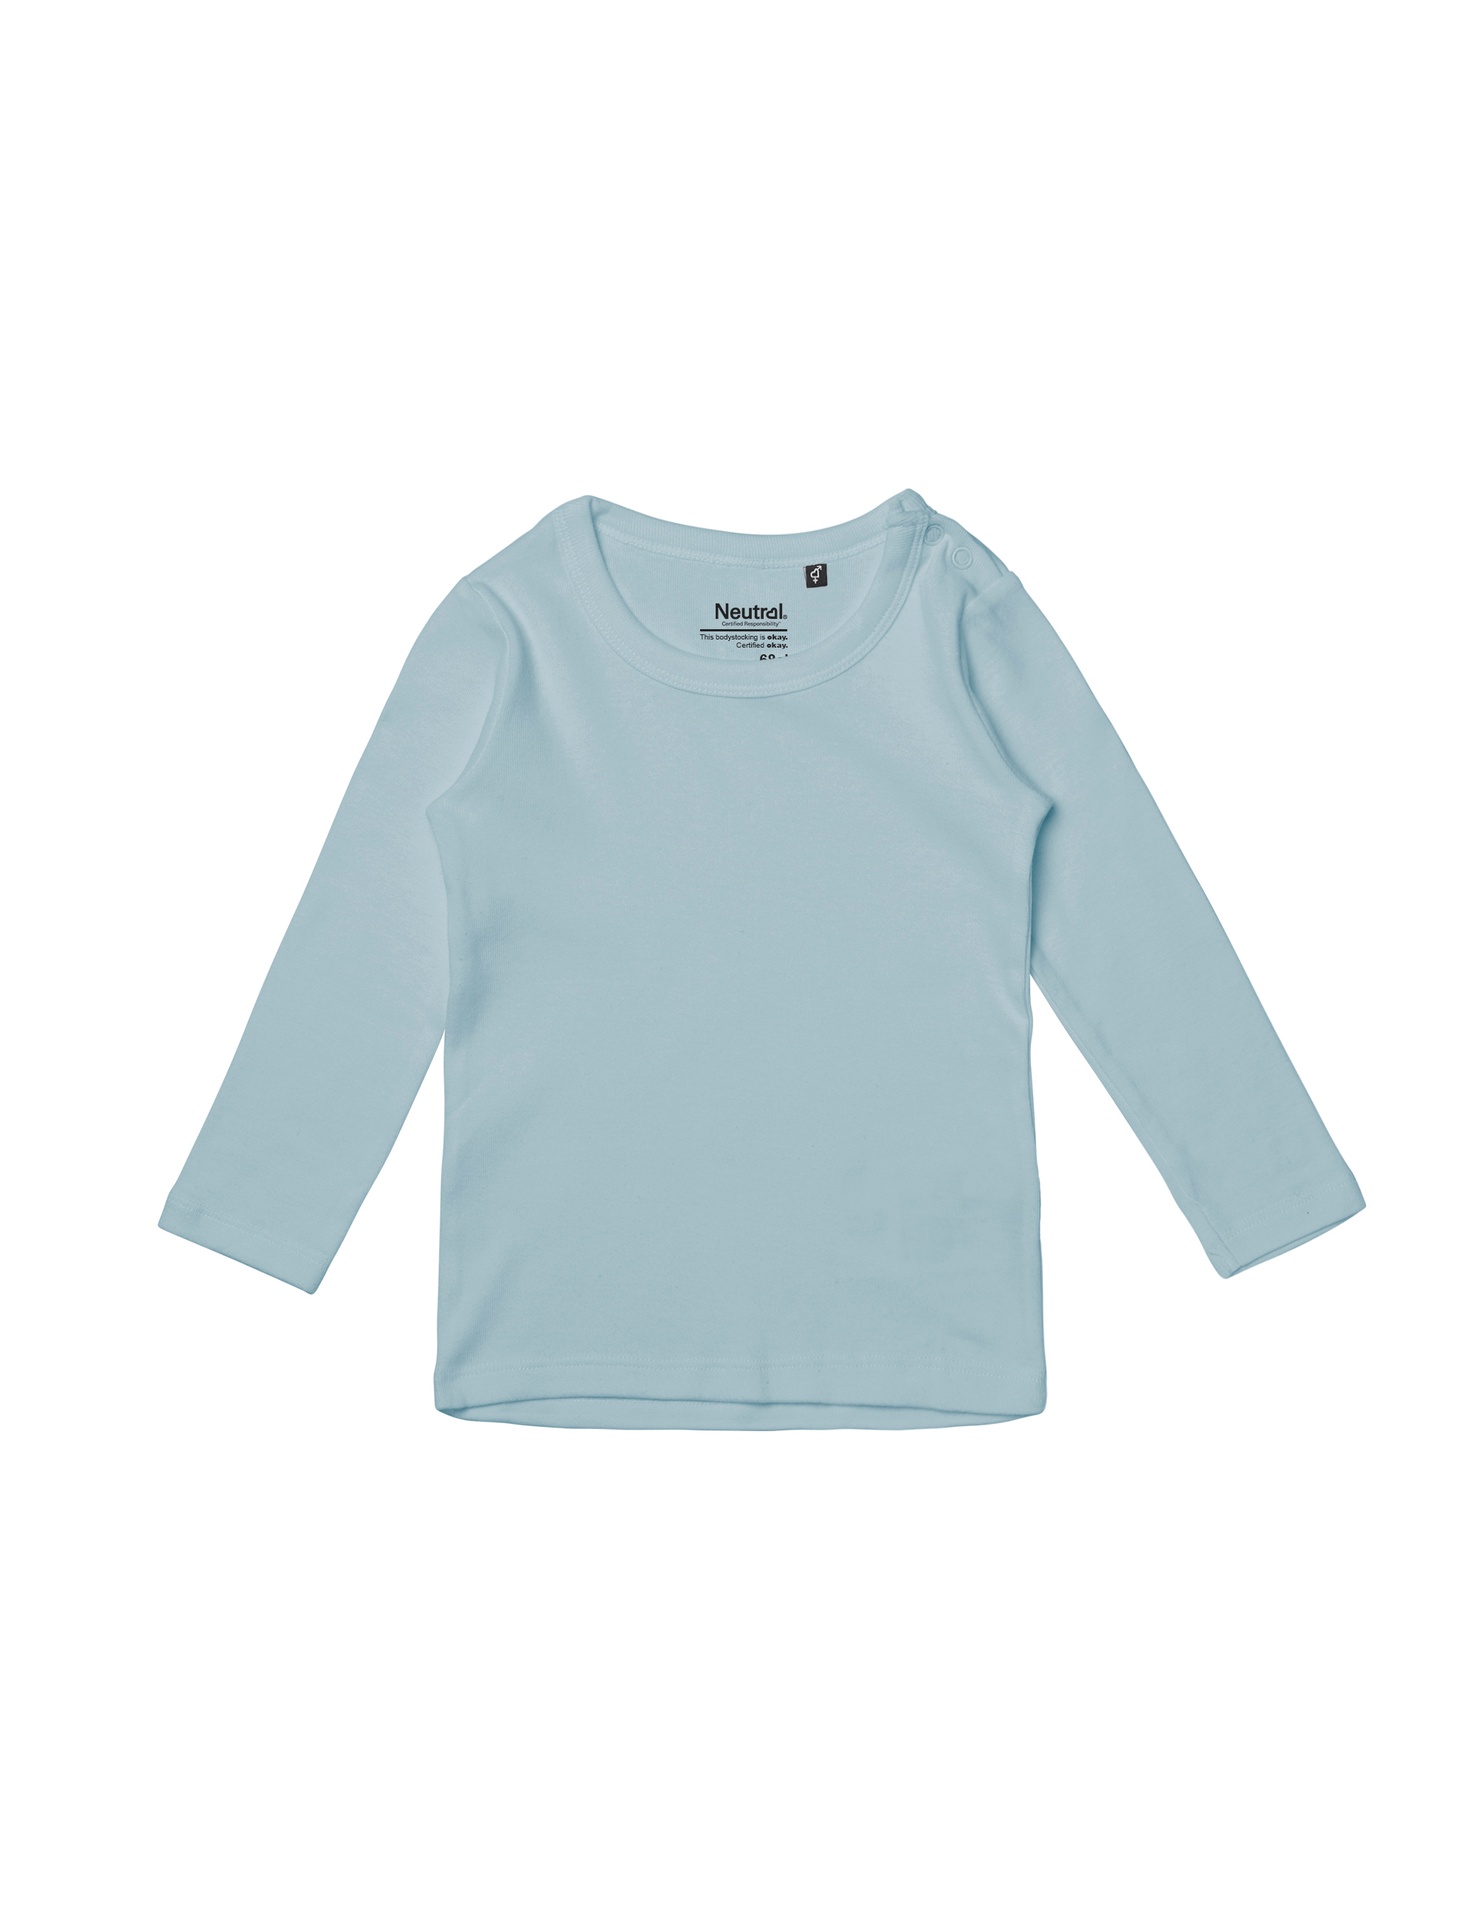 [PR/05630] Babies Long Sleeve T-Shirt (Light Blue 69, 74 cm)